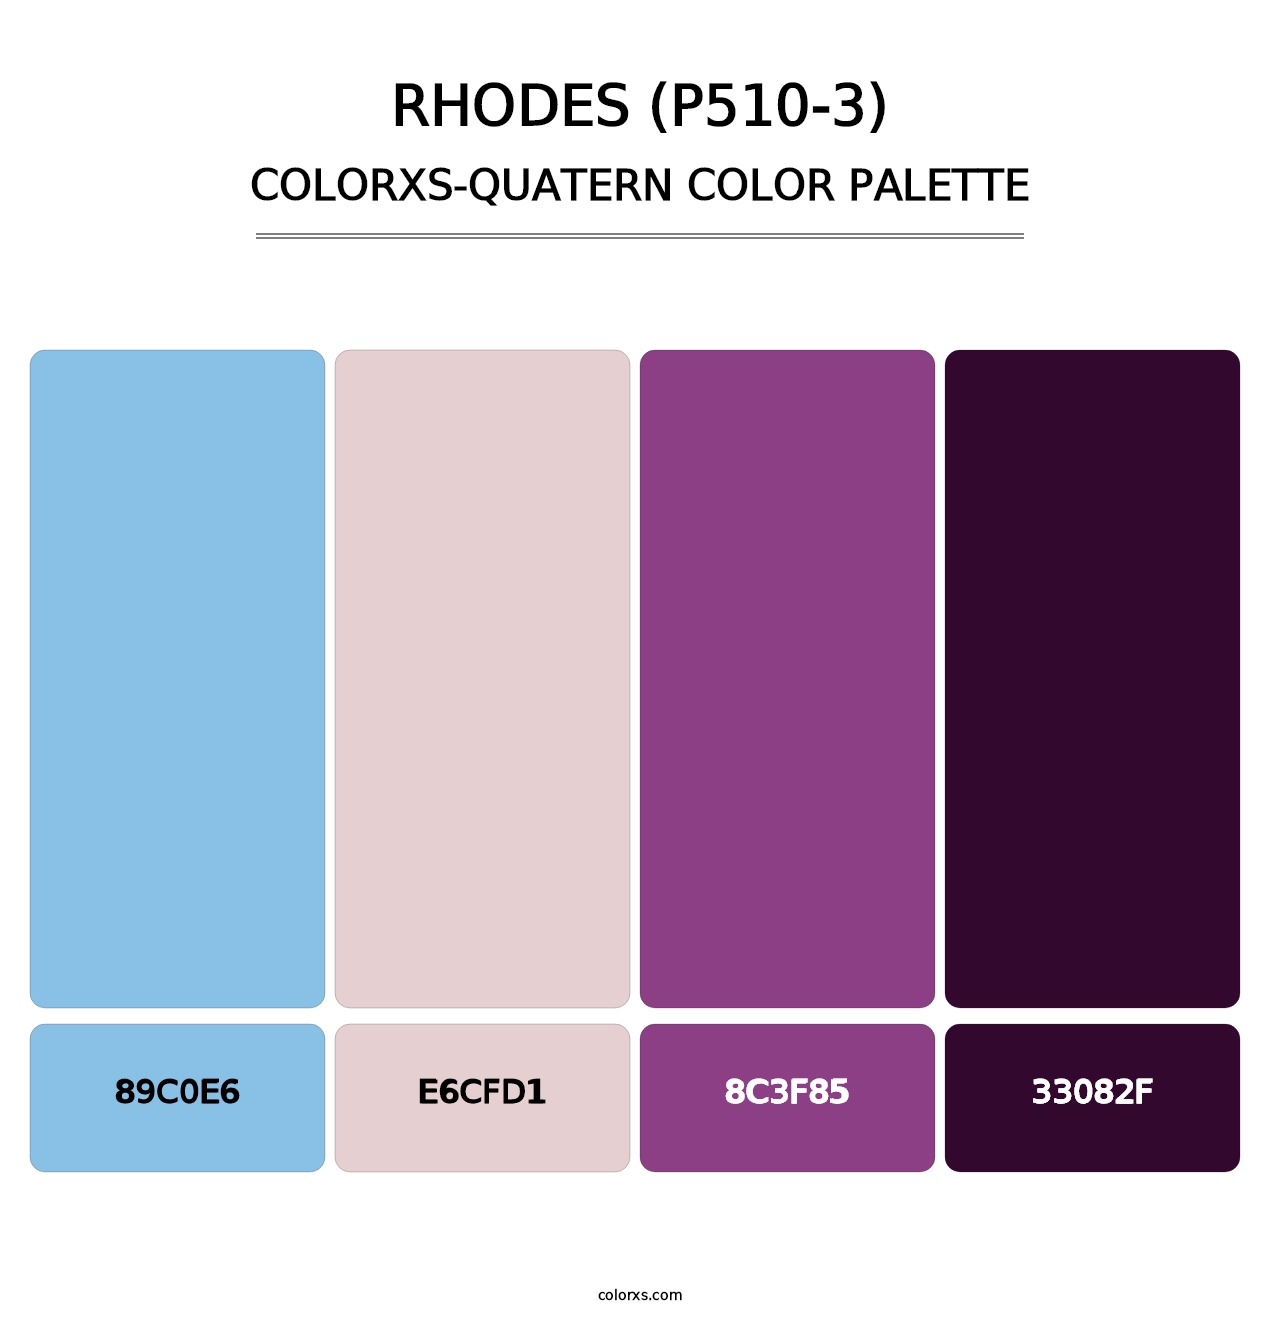 Rhodes (P510-3) - Colorxs Quatern Palette